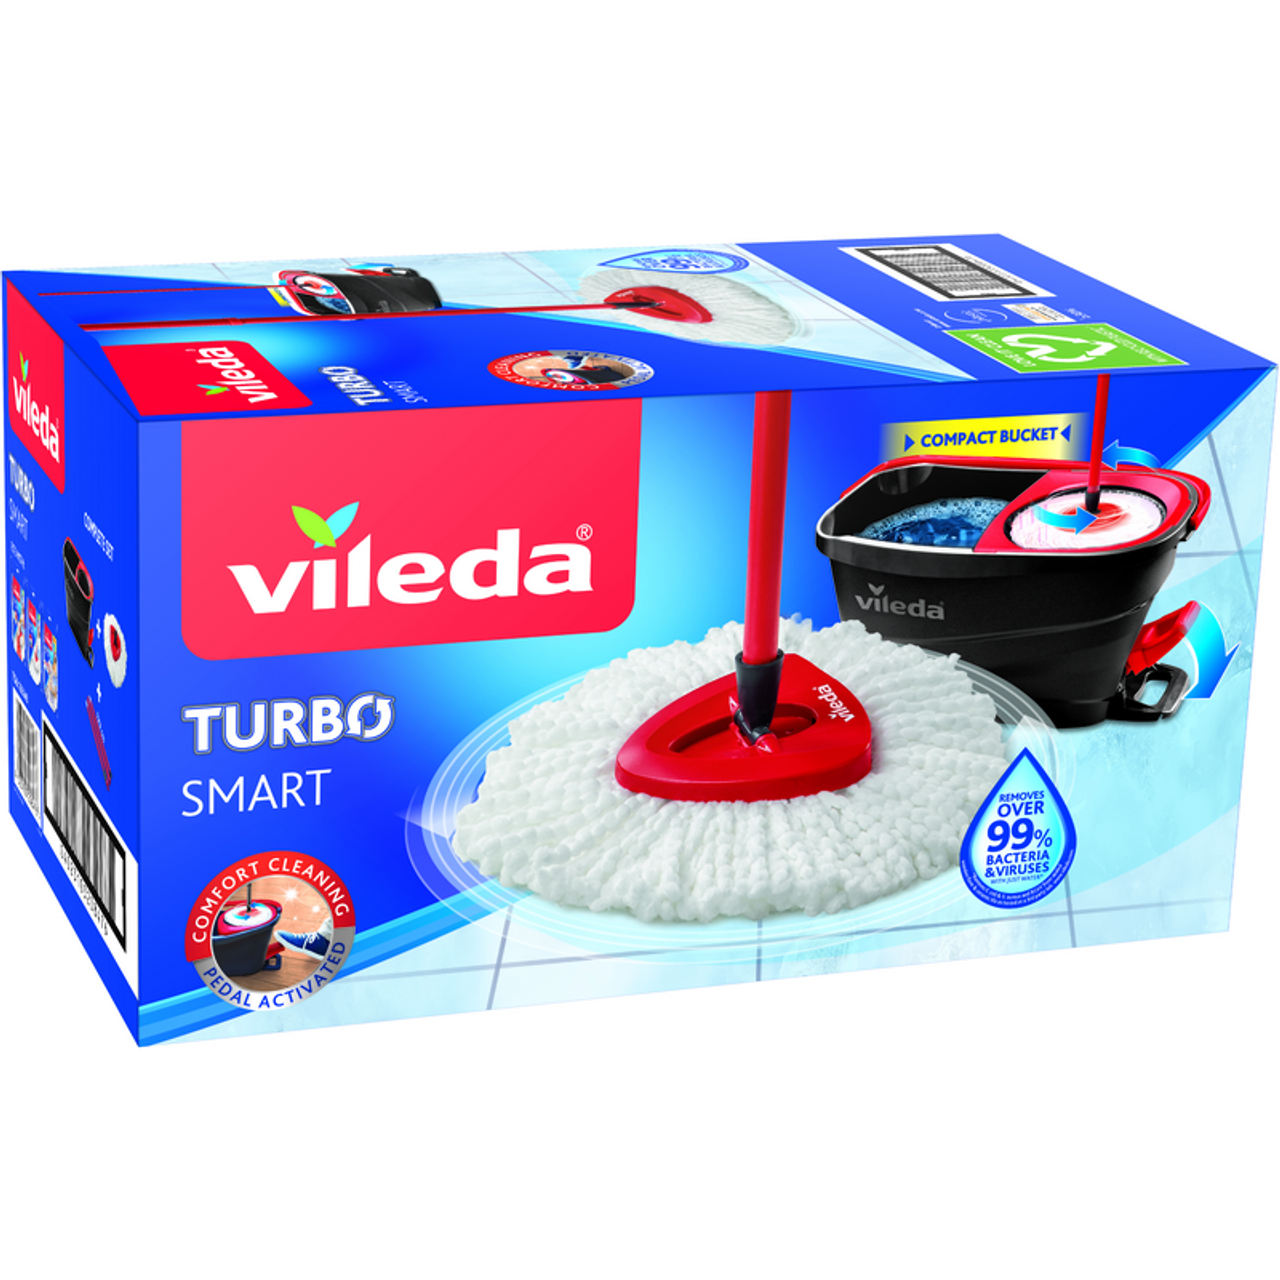 VILEDA TURBO SMART  Vileda Turbo Smart è il sistema lavapavimenti